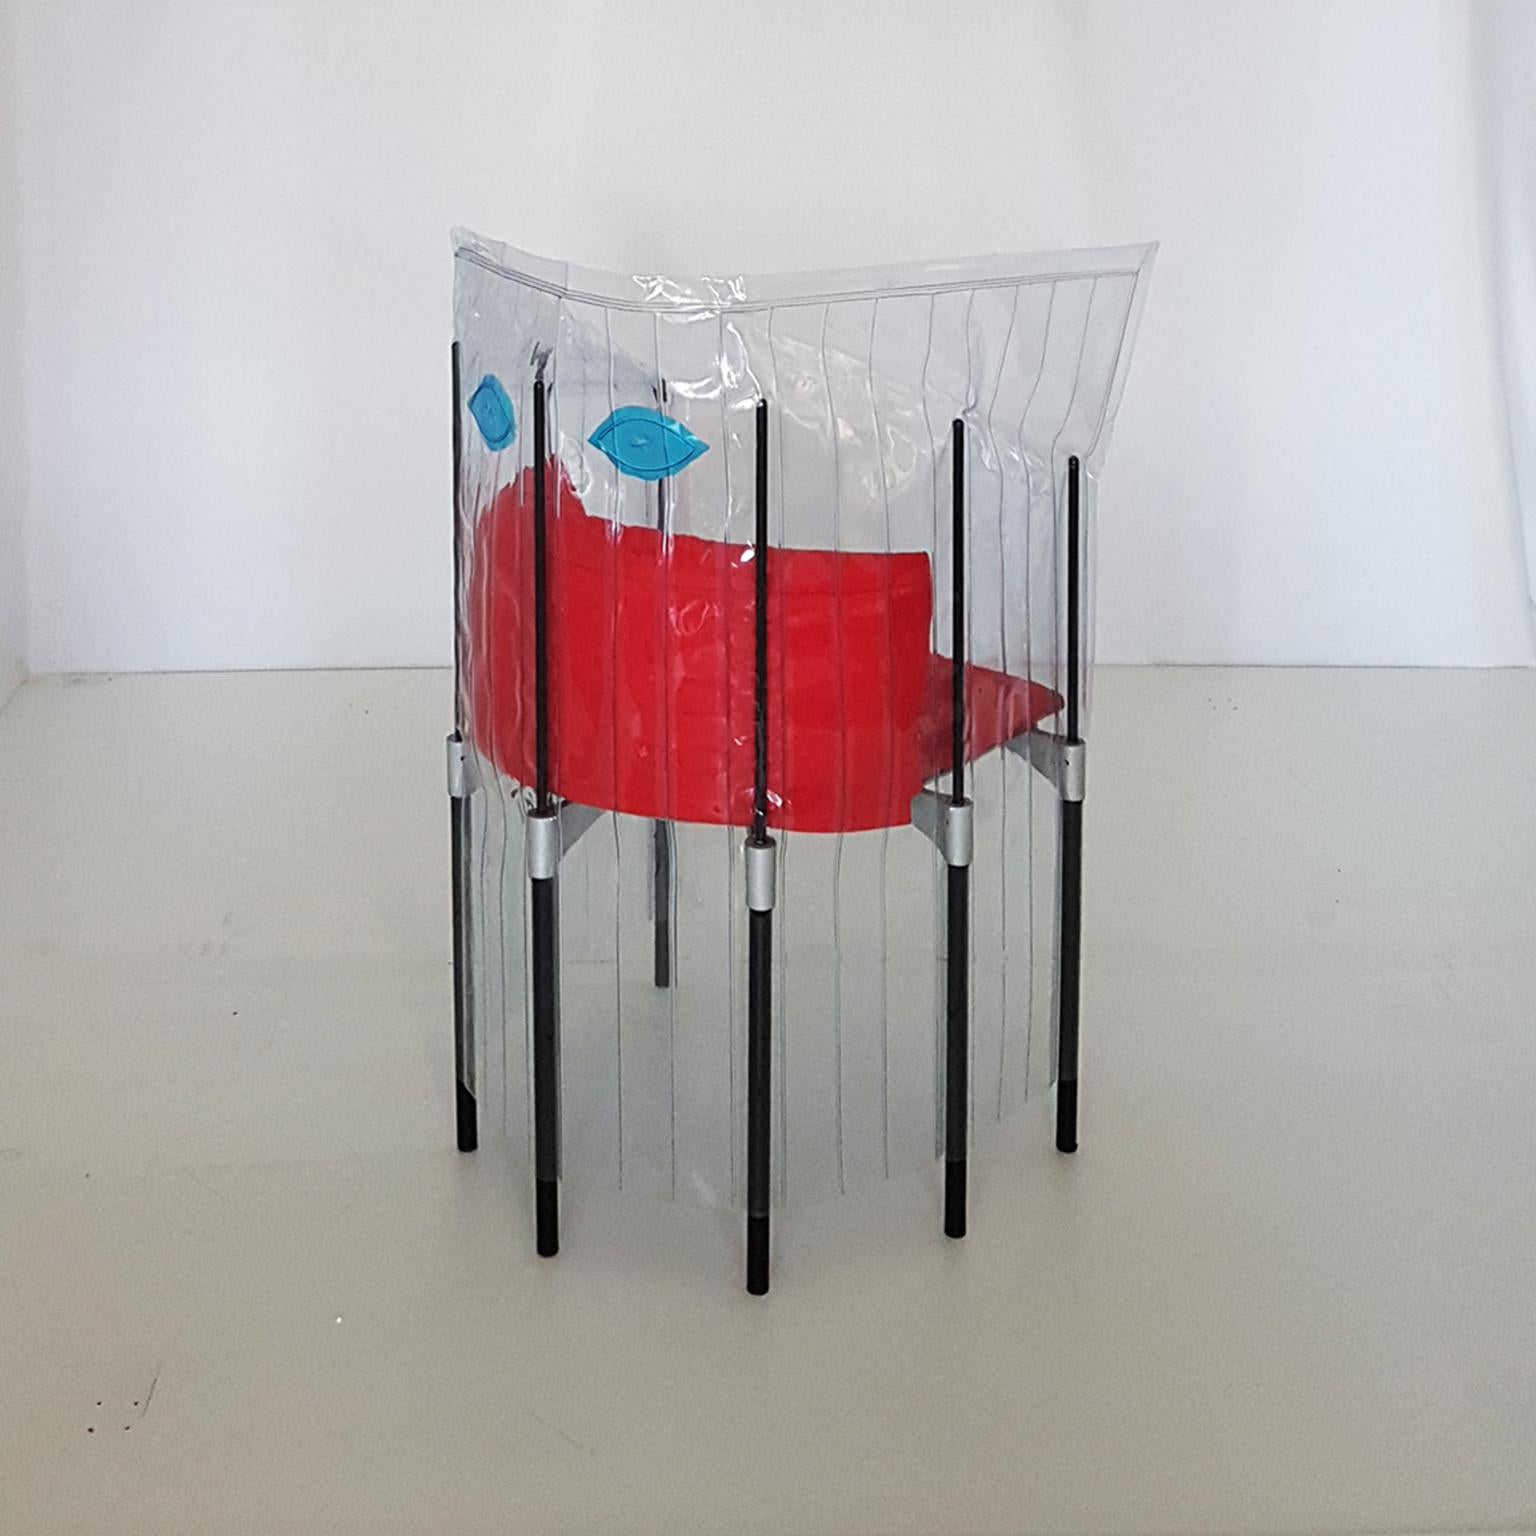 Aluminum Contemporary Italian Gaetano Pesce Aluminium Structure Armchair with Red Seat